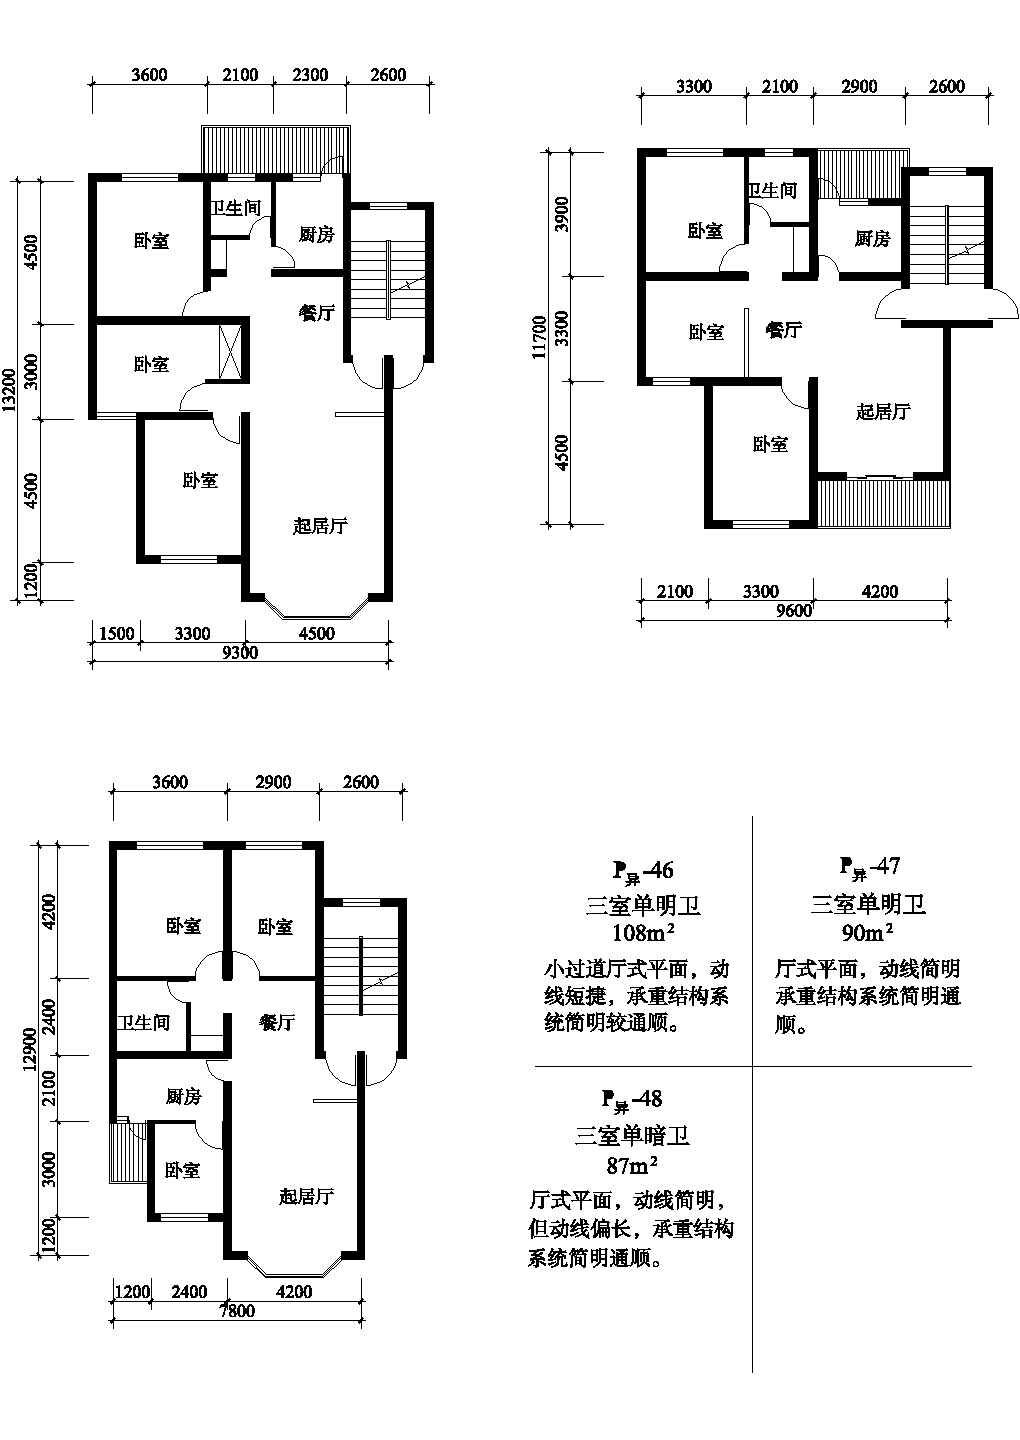 三室108/90/87平方单元式住宅平面图纸